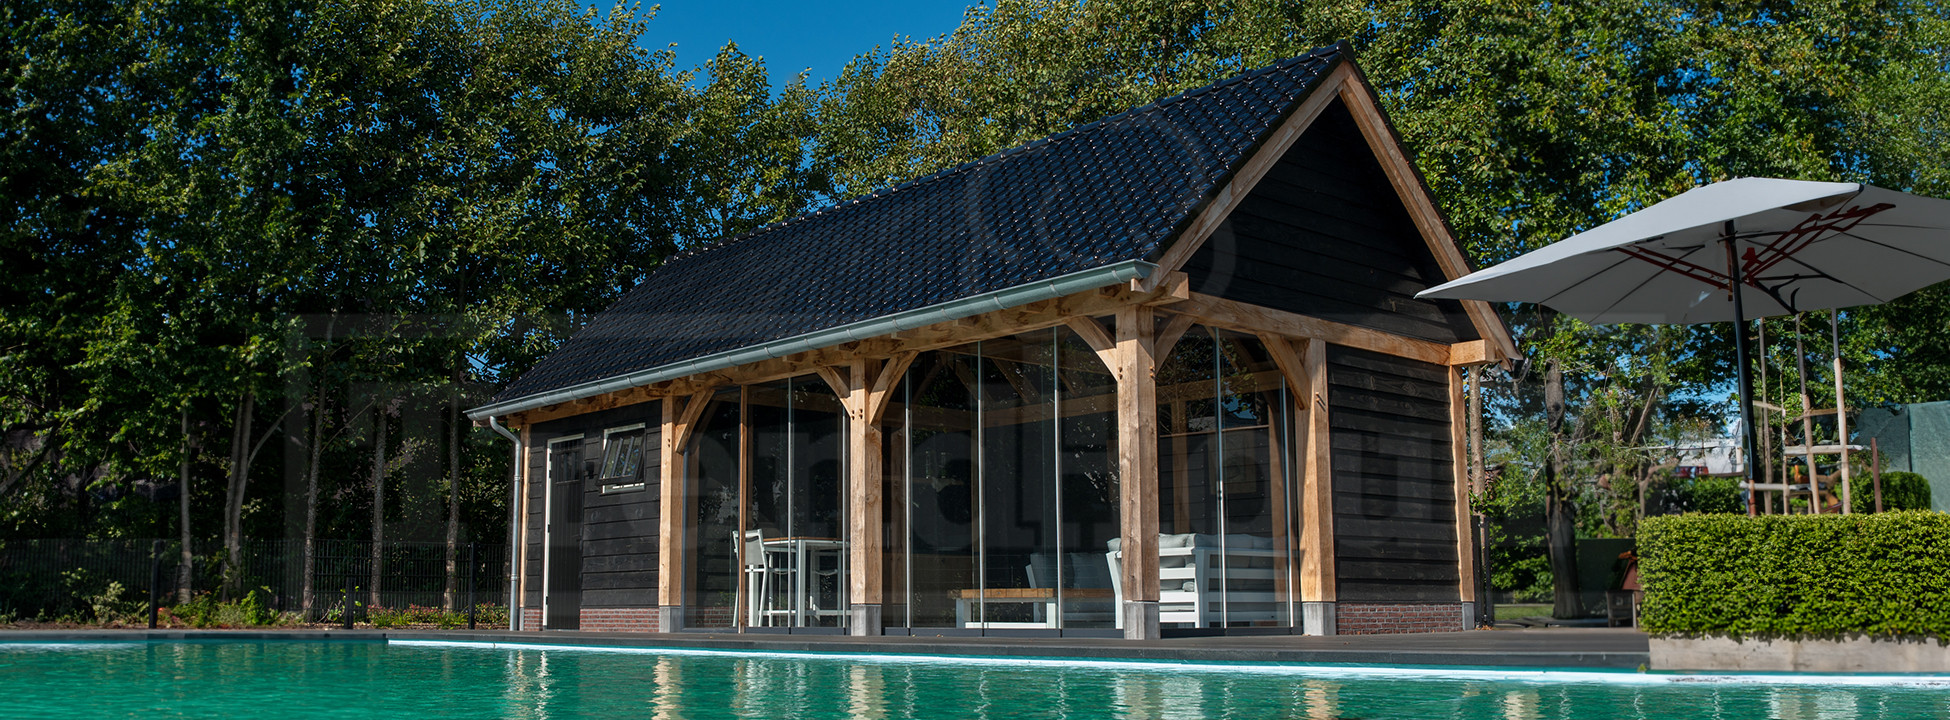 douglas-houten-schuur-met-overkapping-poolhouse-technische-ruimte-bij-zwembad-trendhout-zadeldak-laten-bouwen-eiken-hout